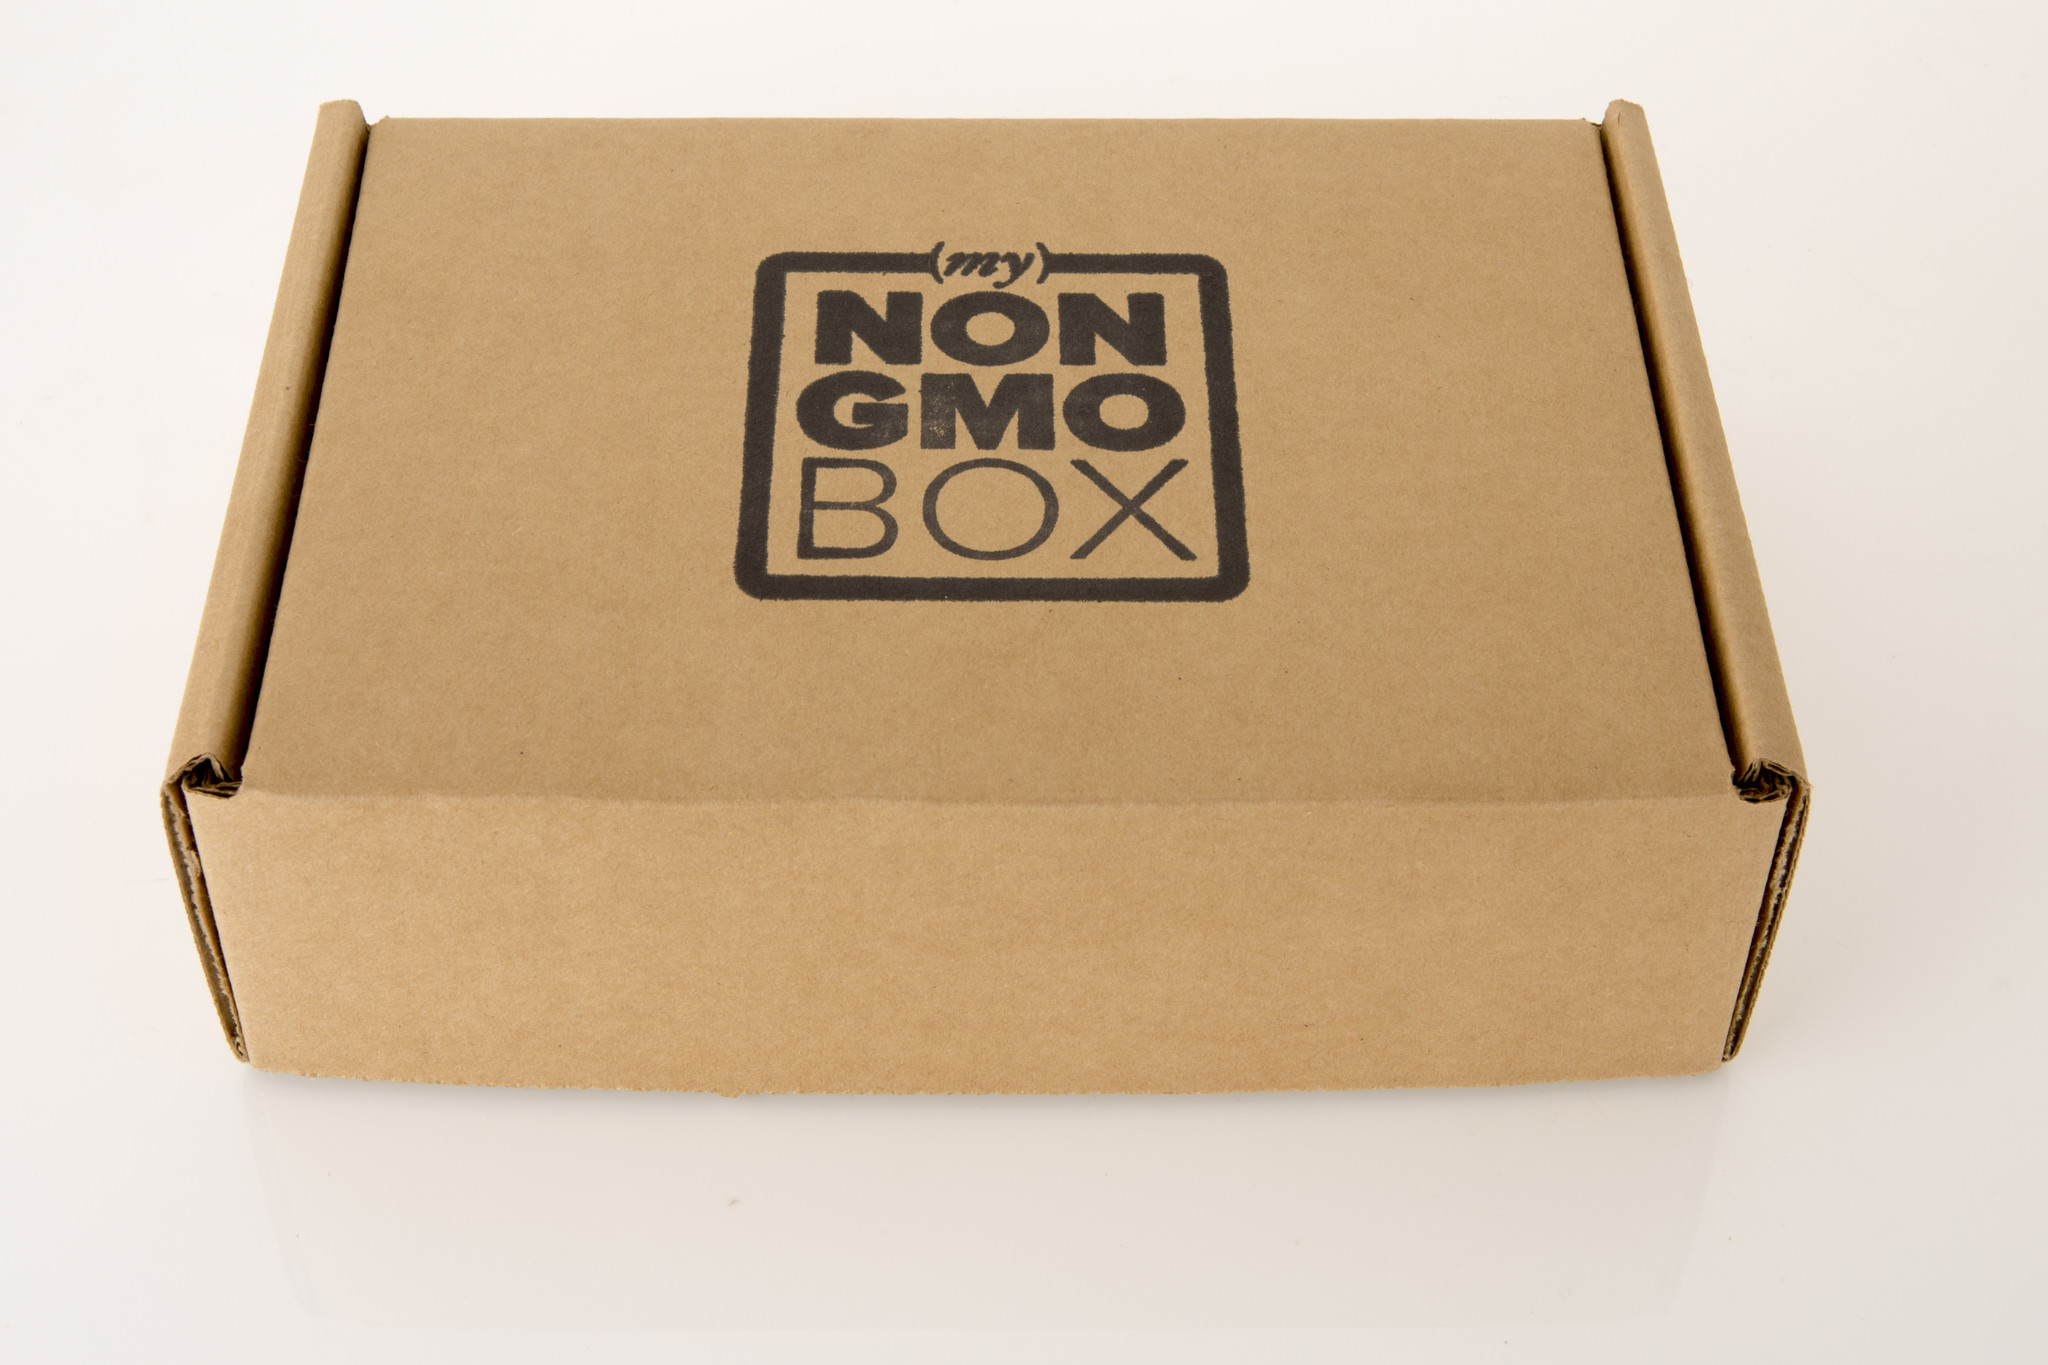 My Non-GMO Box